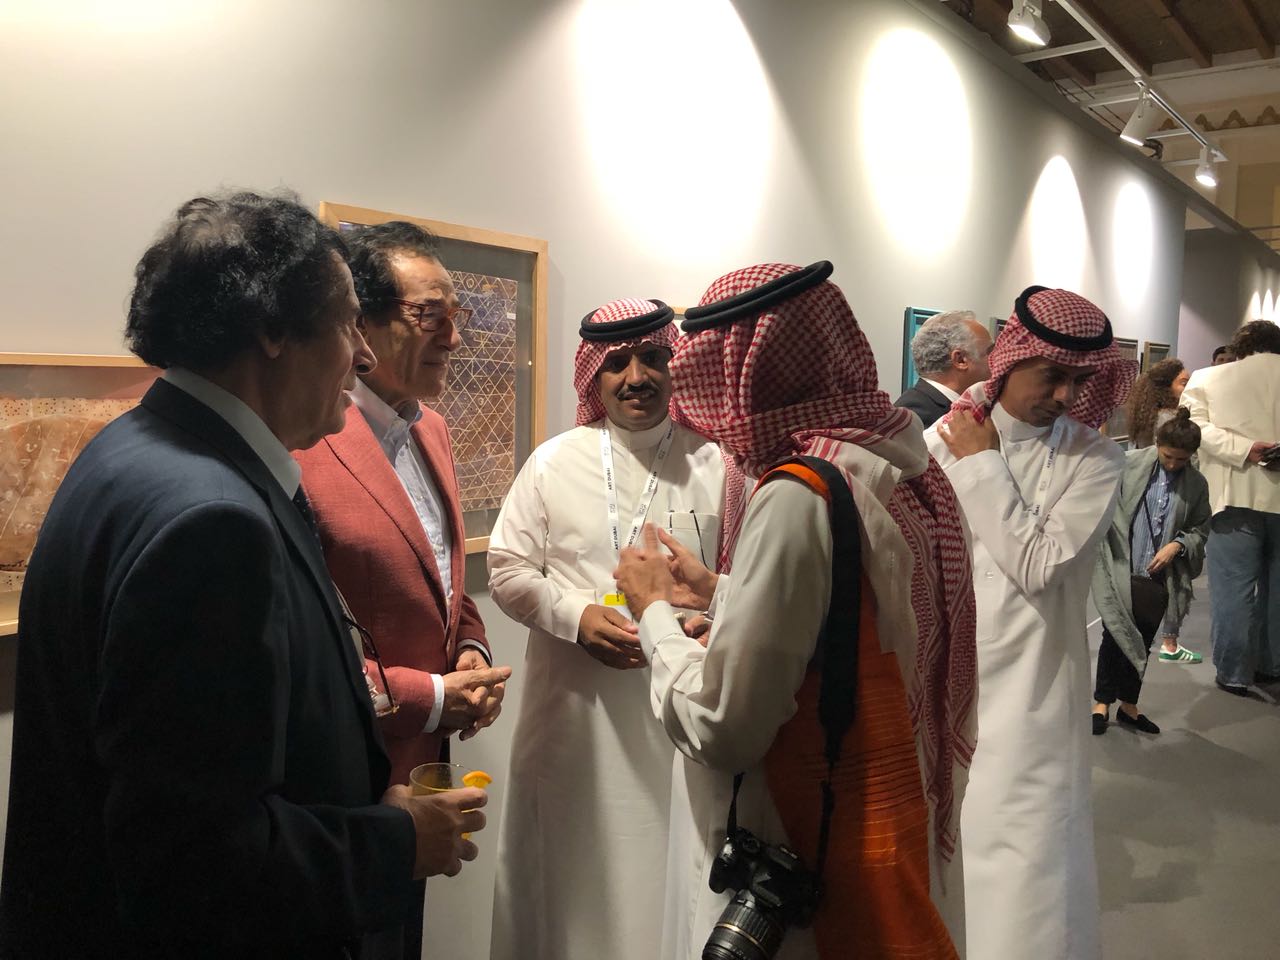 فاروق حسني يزور معرض الفنون التشكيلية في دبى (9)